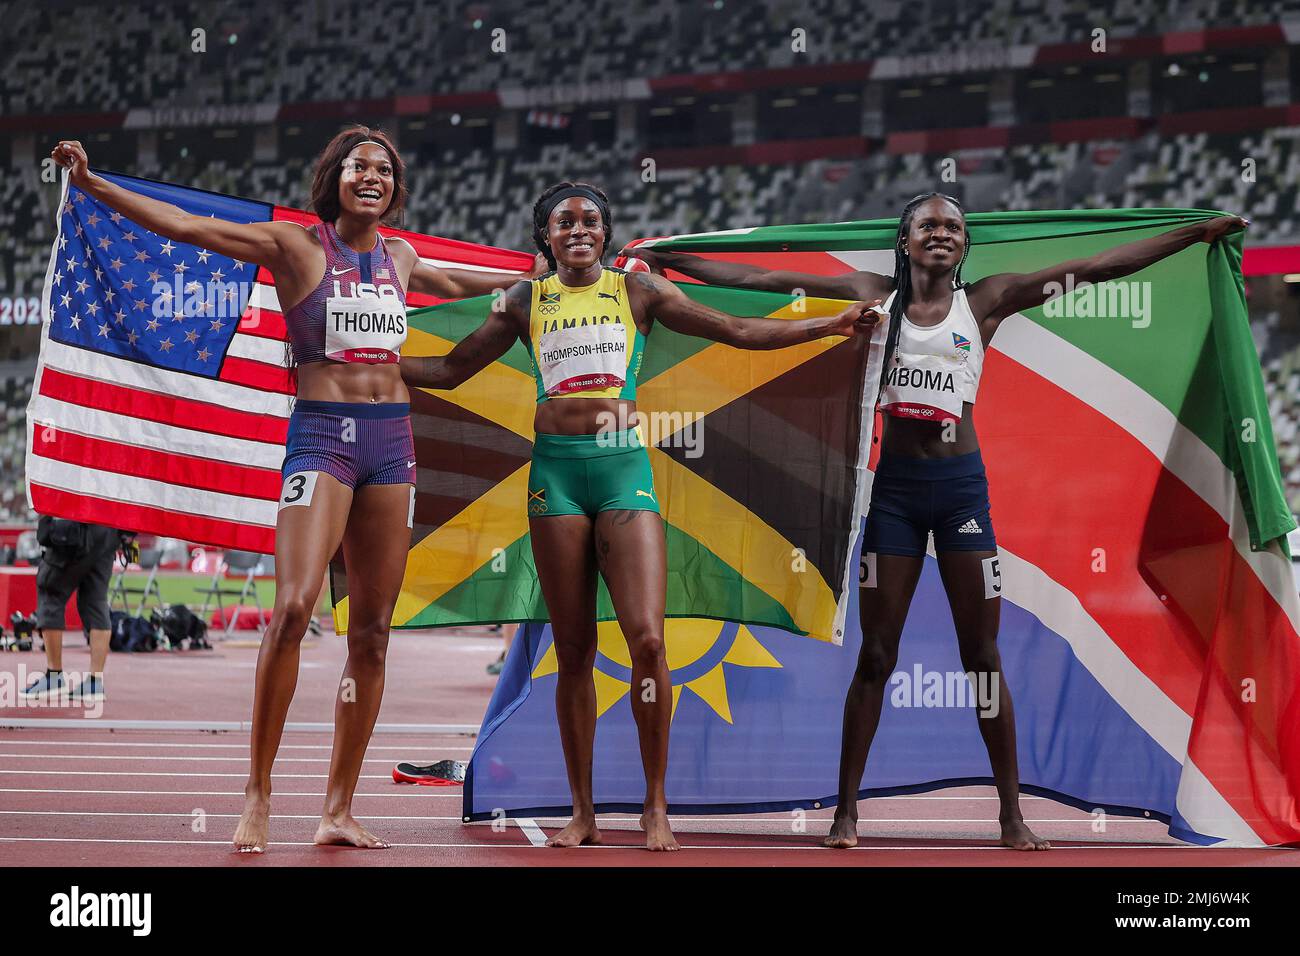 Elaine Thompson-Herah (JAM) -C-.Champion olympique,Gabrielle Thomas (USA) médaillée de bronze -L- et Christine Mboma (NAM) silverr médaillée il femmes 200 mètres aux Jeux Olympiques d'été 2020 (2021), Tokyo, Japon Banque D'Images